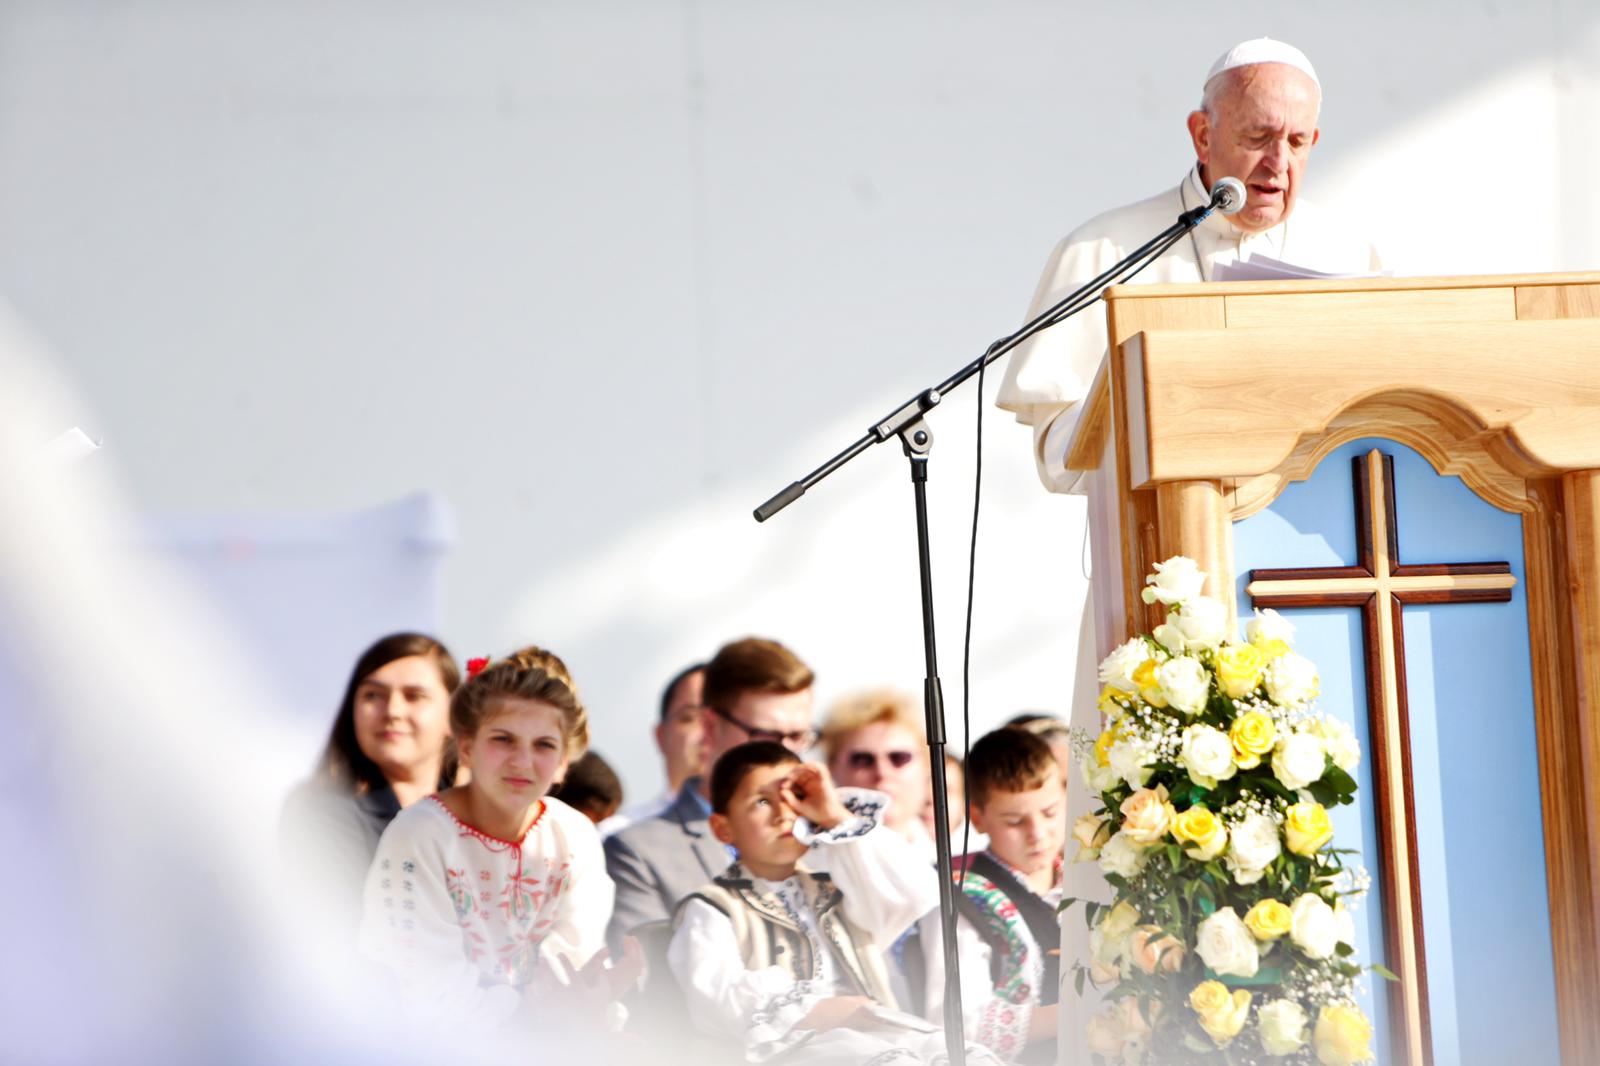 Ultimele noutăți despre starea de sănătate a papei Francisc. A suferit o operație complicată